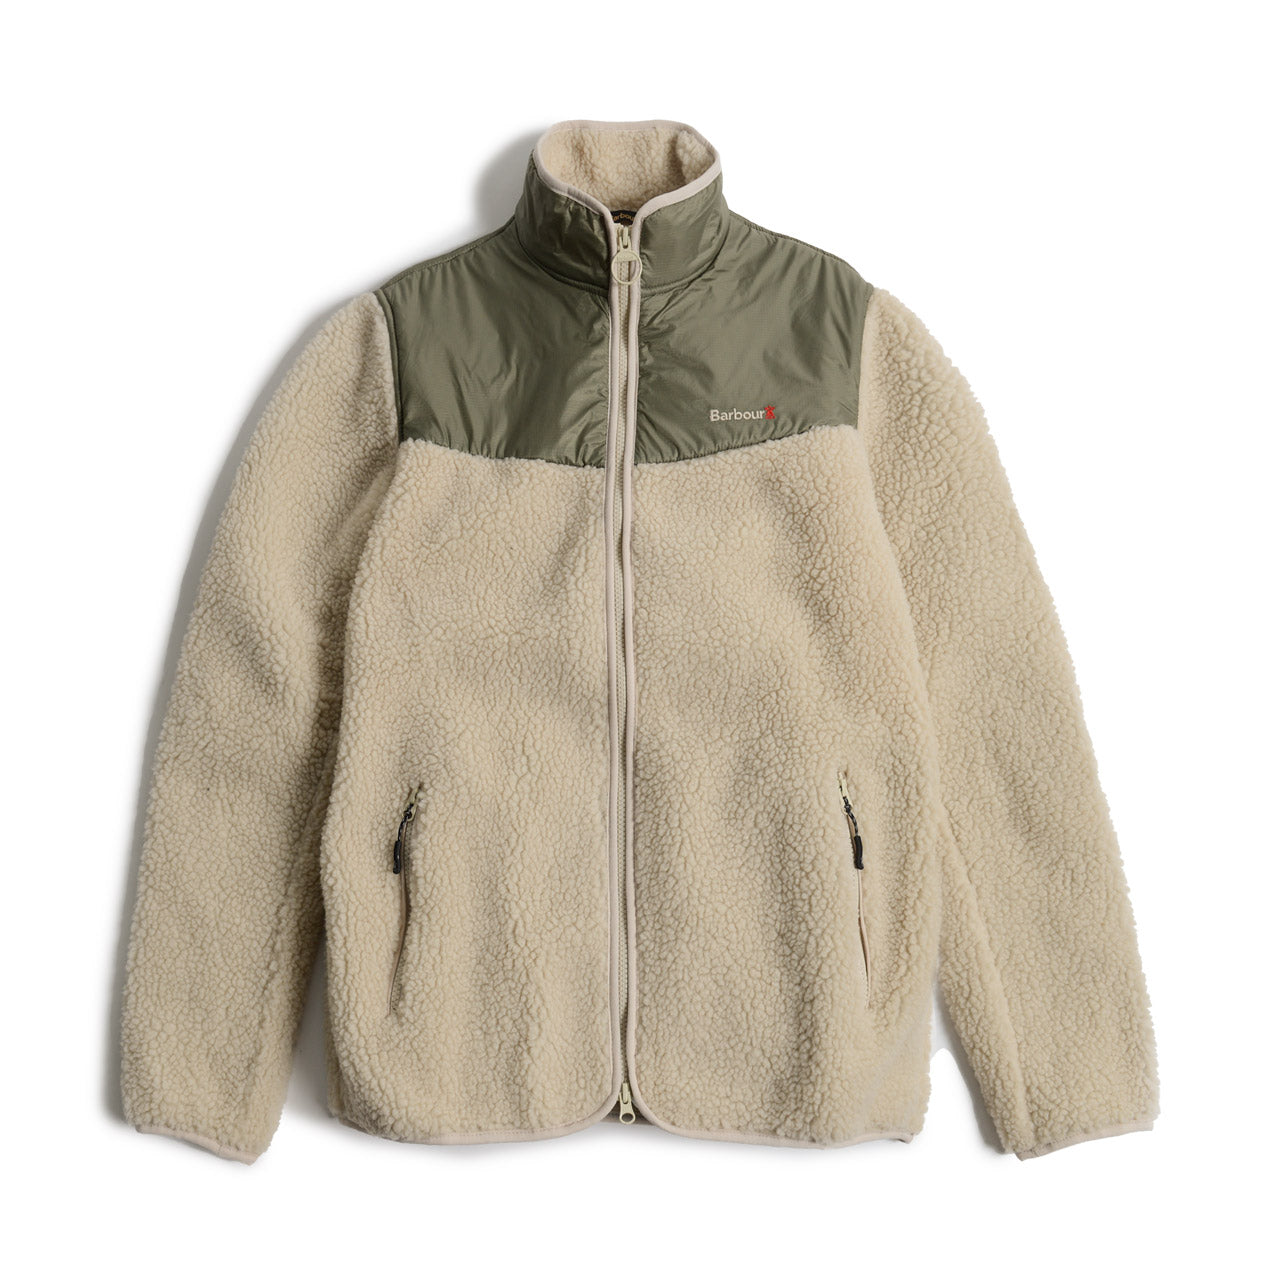 Barbour Axis Fleece Jacket | Uncrate